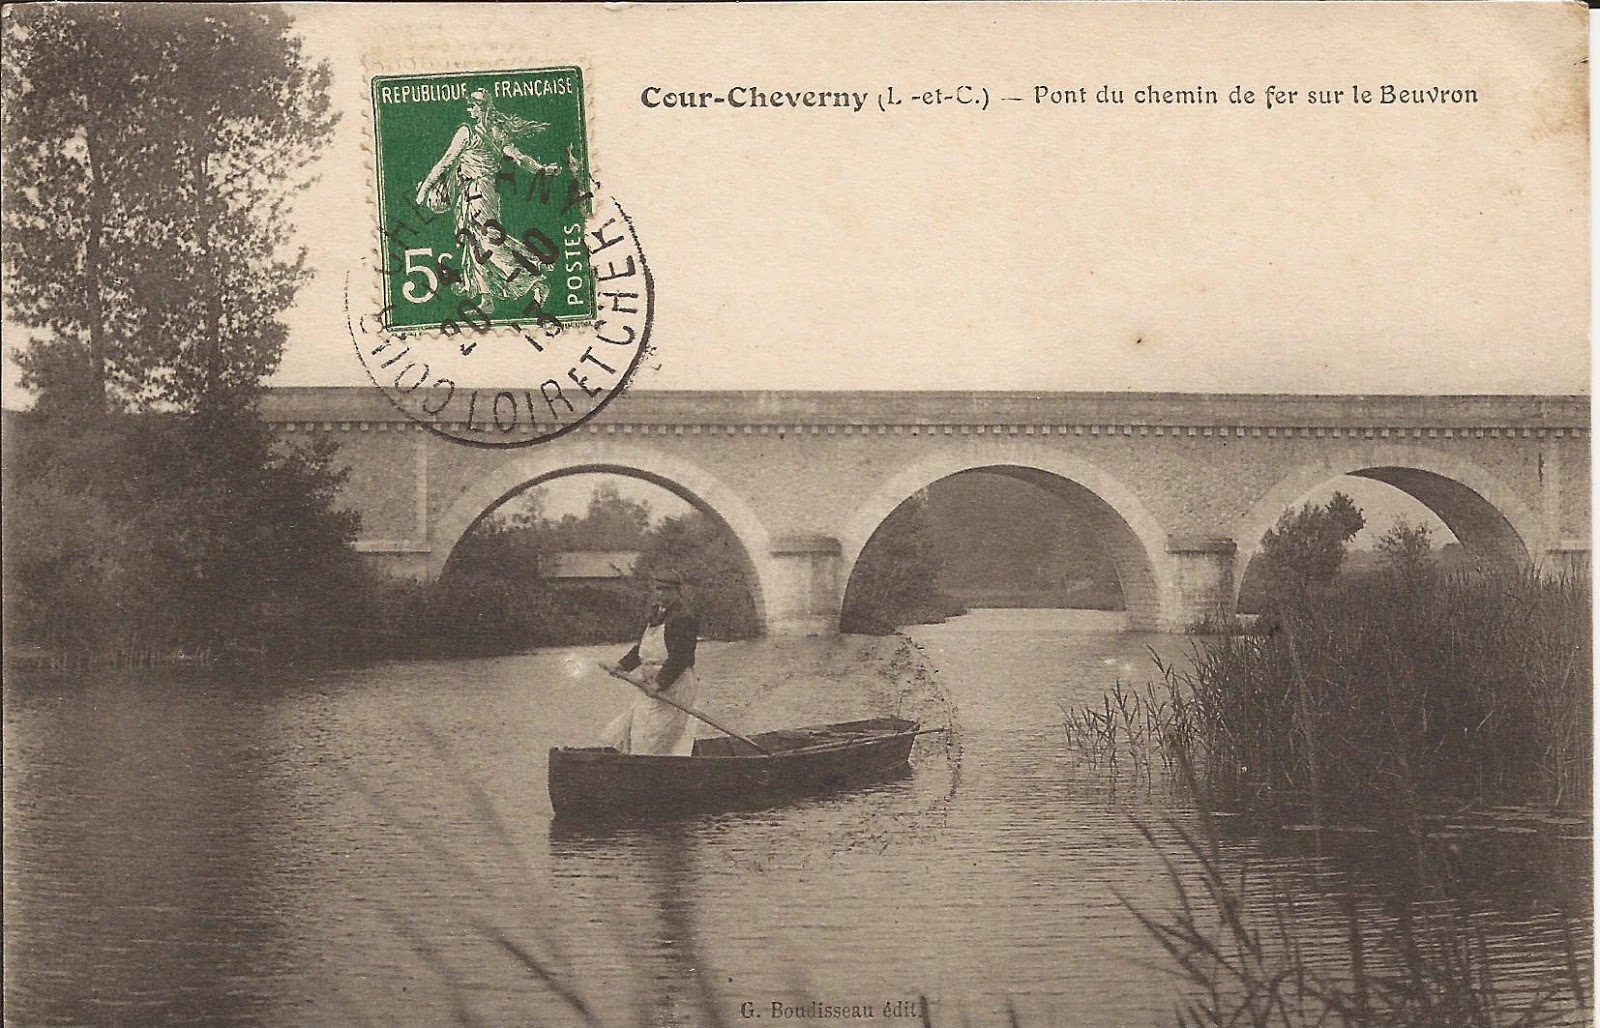 Pont du chemin de fer sur le Beuvron - Cour-Cheverny